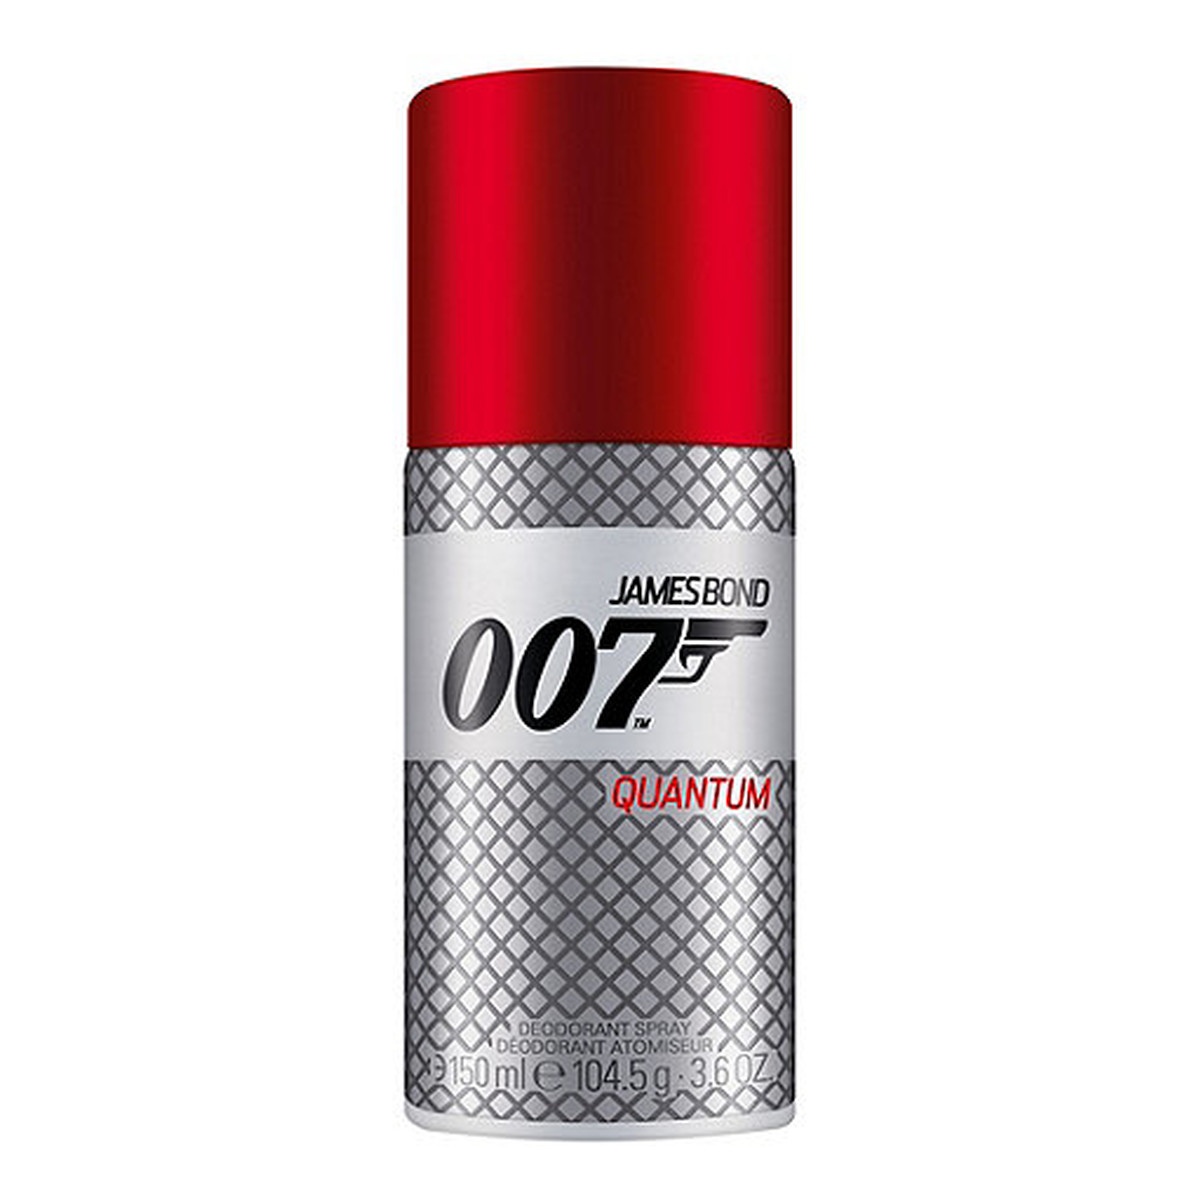 James Bond 007 007 Quantum Dezodorant spray 150ml